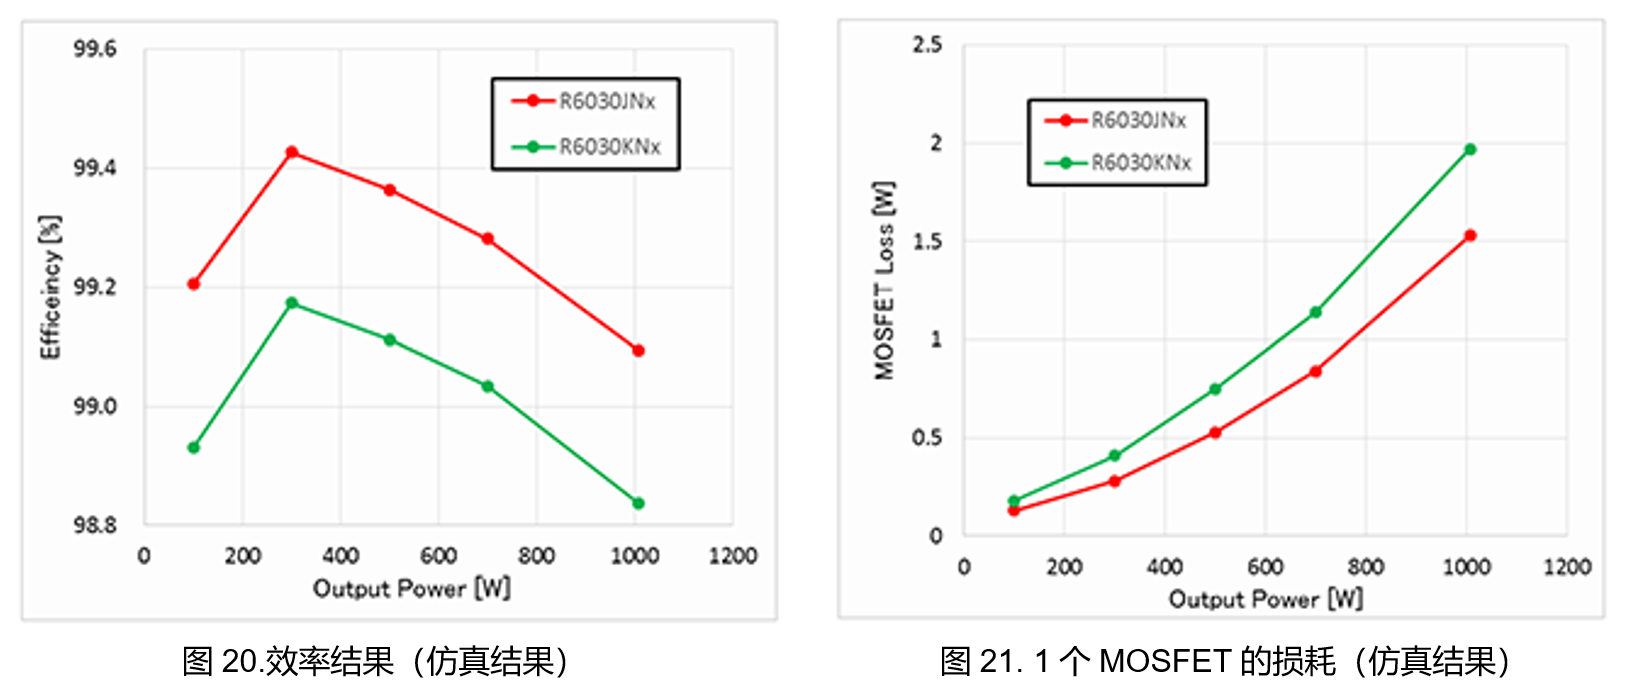 三相変調インバータ回路によるPrestoMOSと通常のSJ MOSFETの効率比較（シミュレーション）/ 効率シミュレーション結果とMOSFET 1個あたりの損失シミュレーション結果